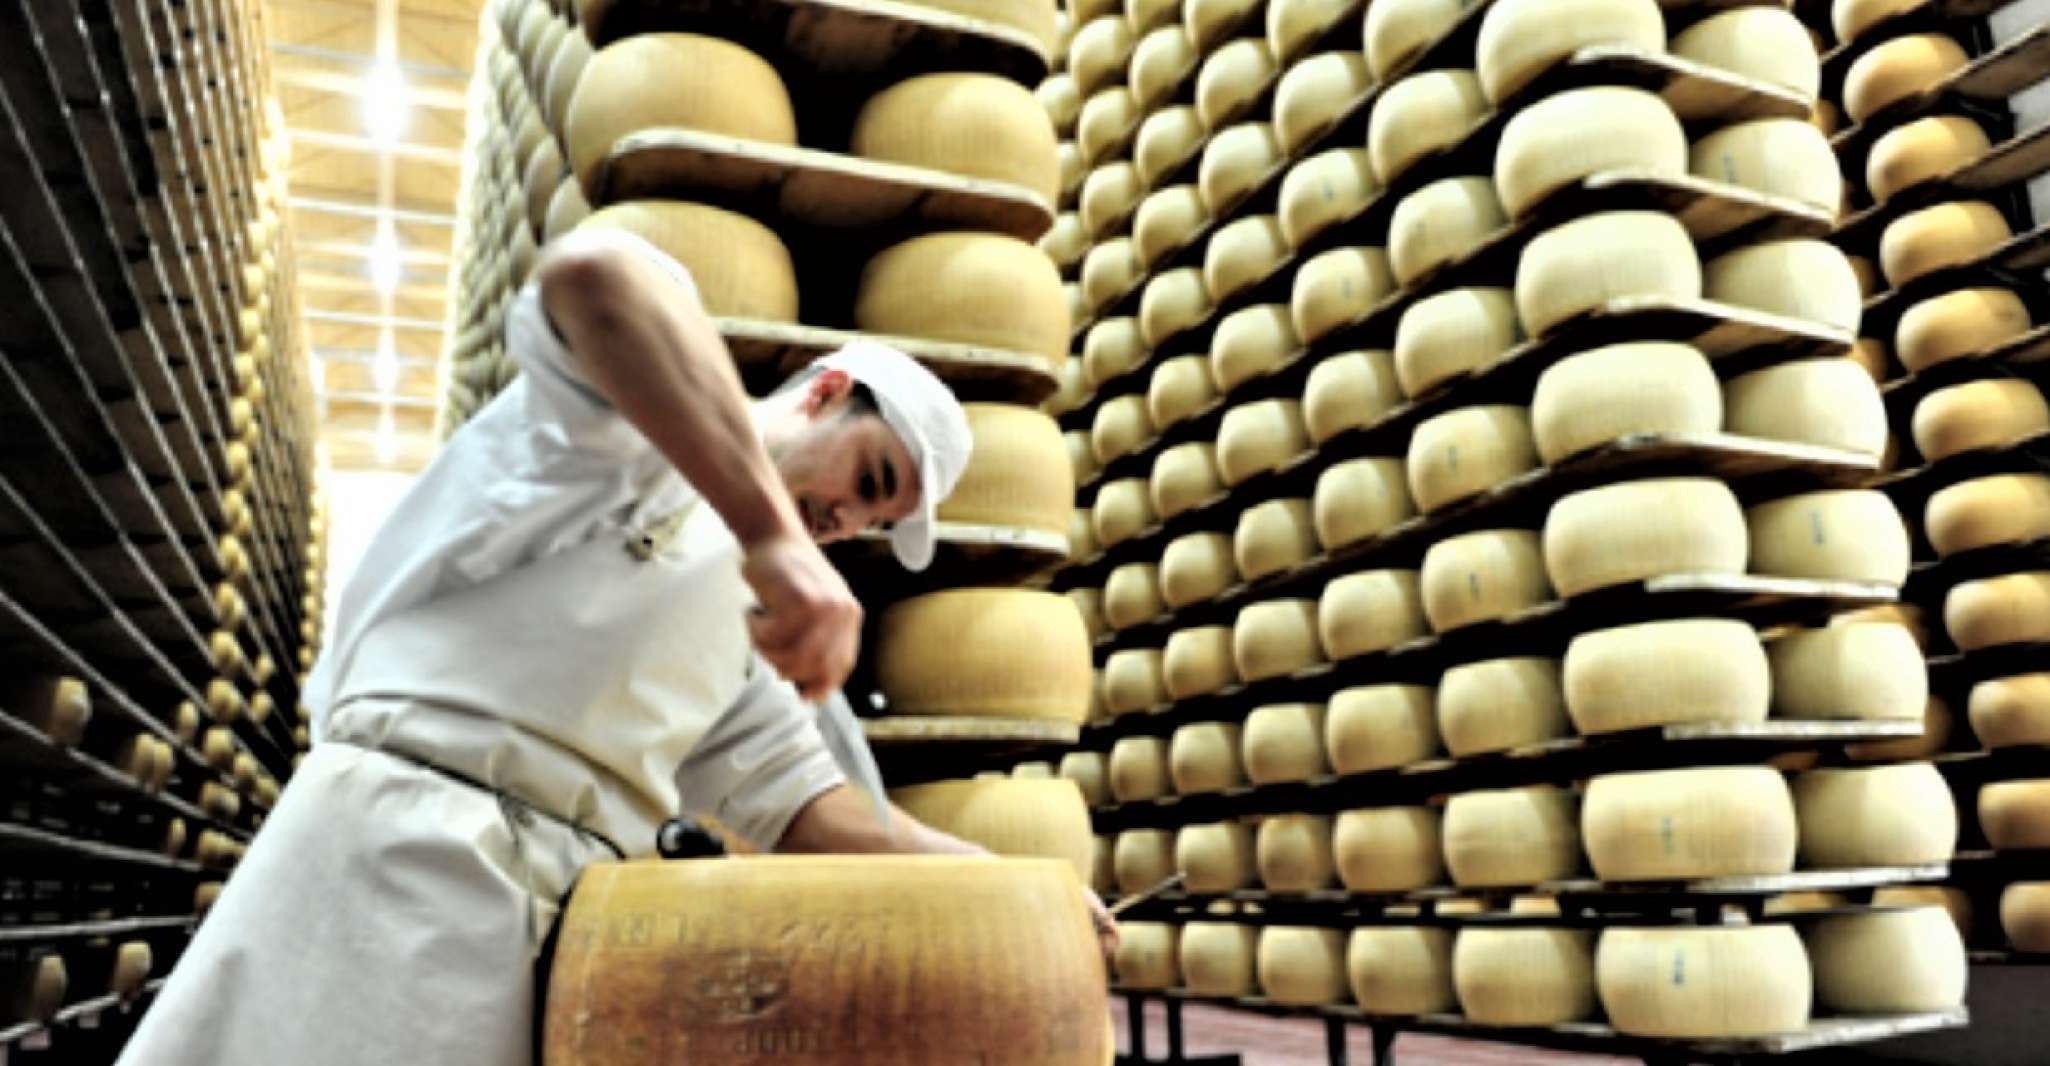 Parma, Parmigiano Production and Parma Ham Tour & Tasting - Housity